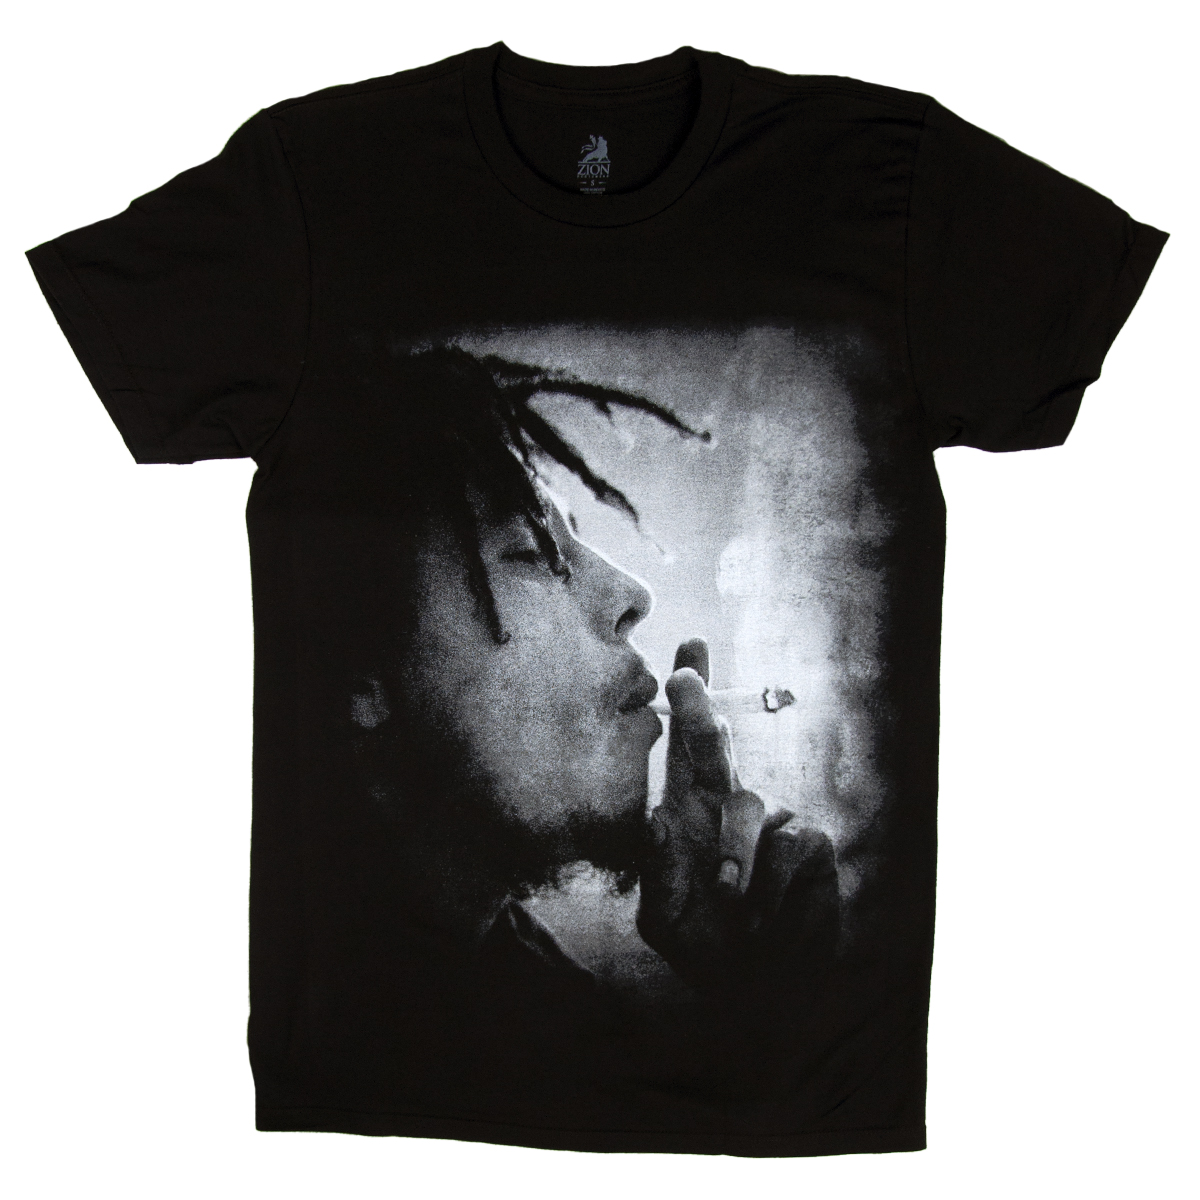 Bob Marley Mellow Mood Black T-Shirt - Men's